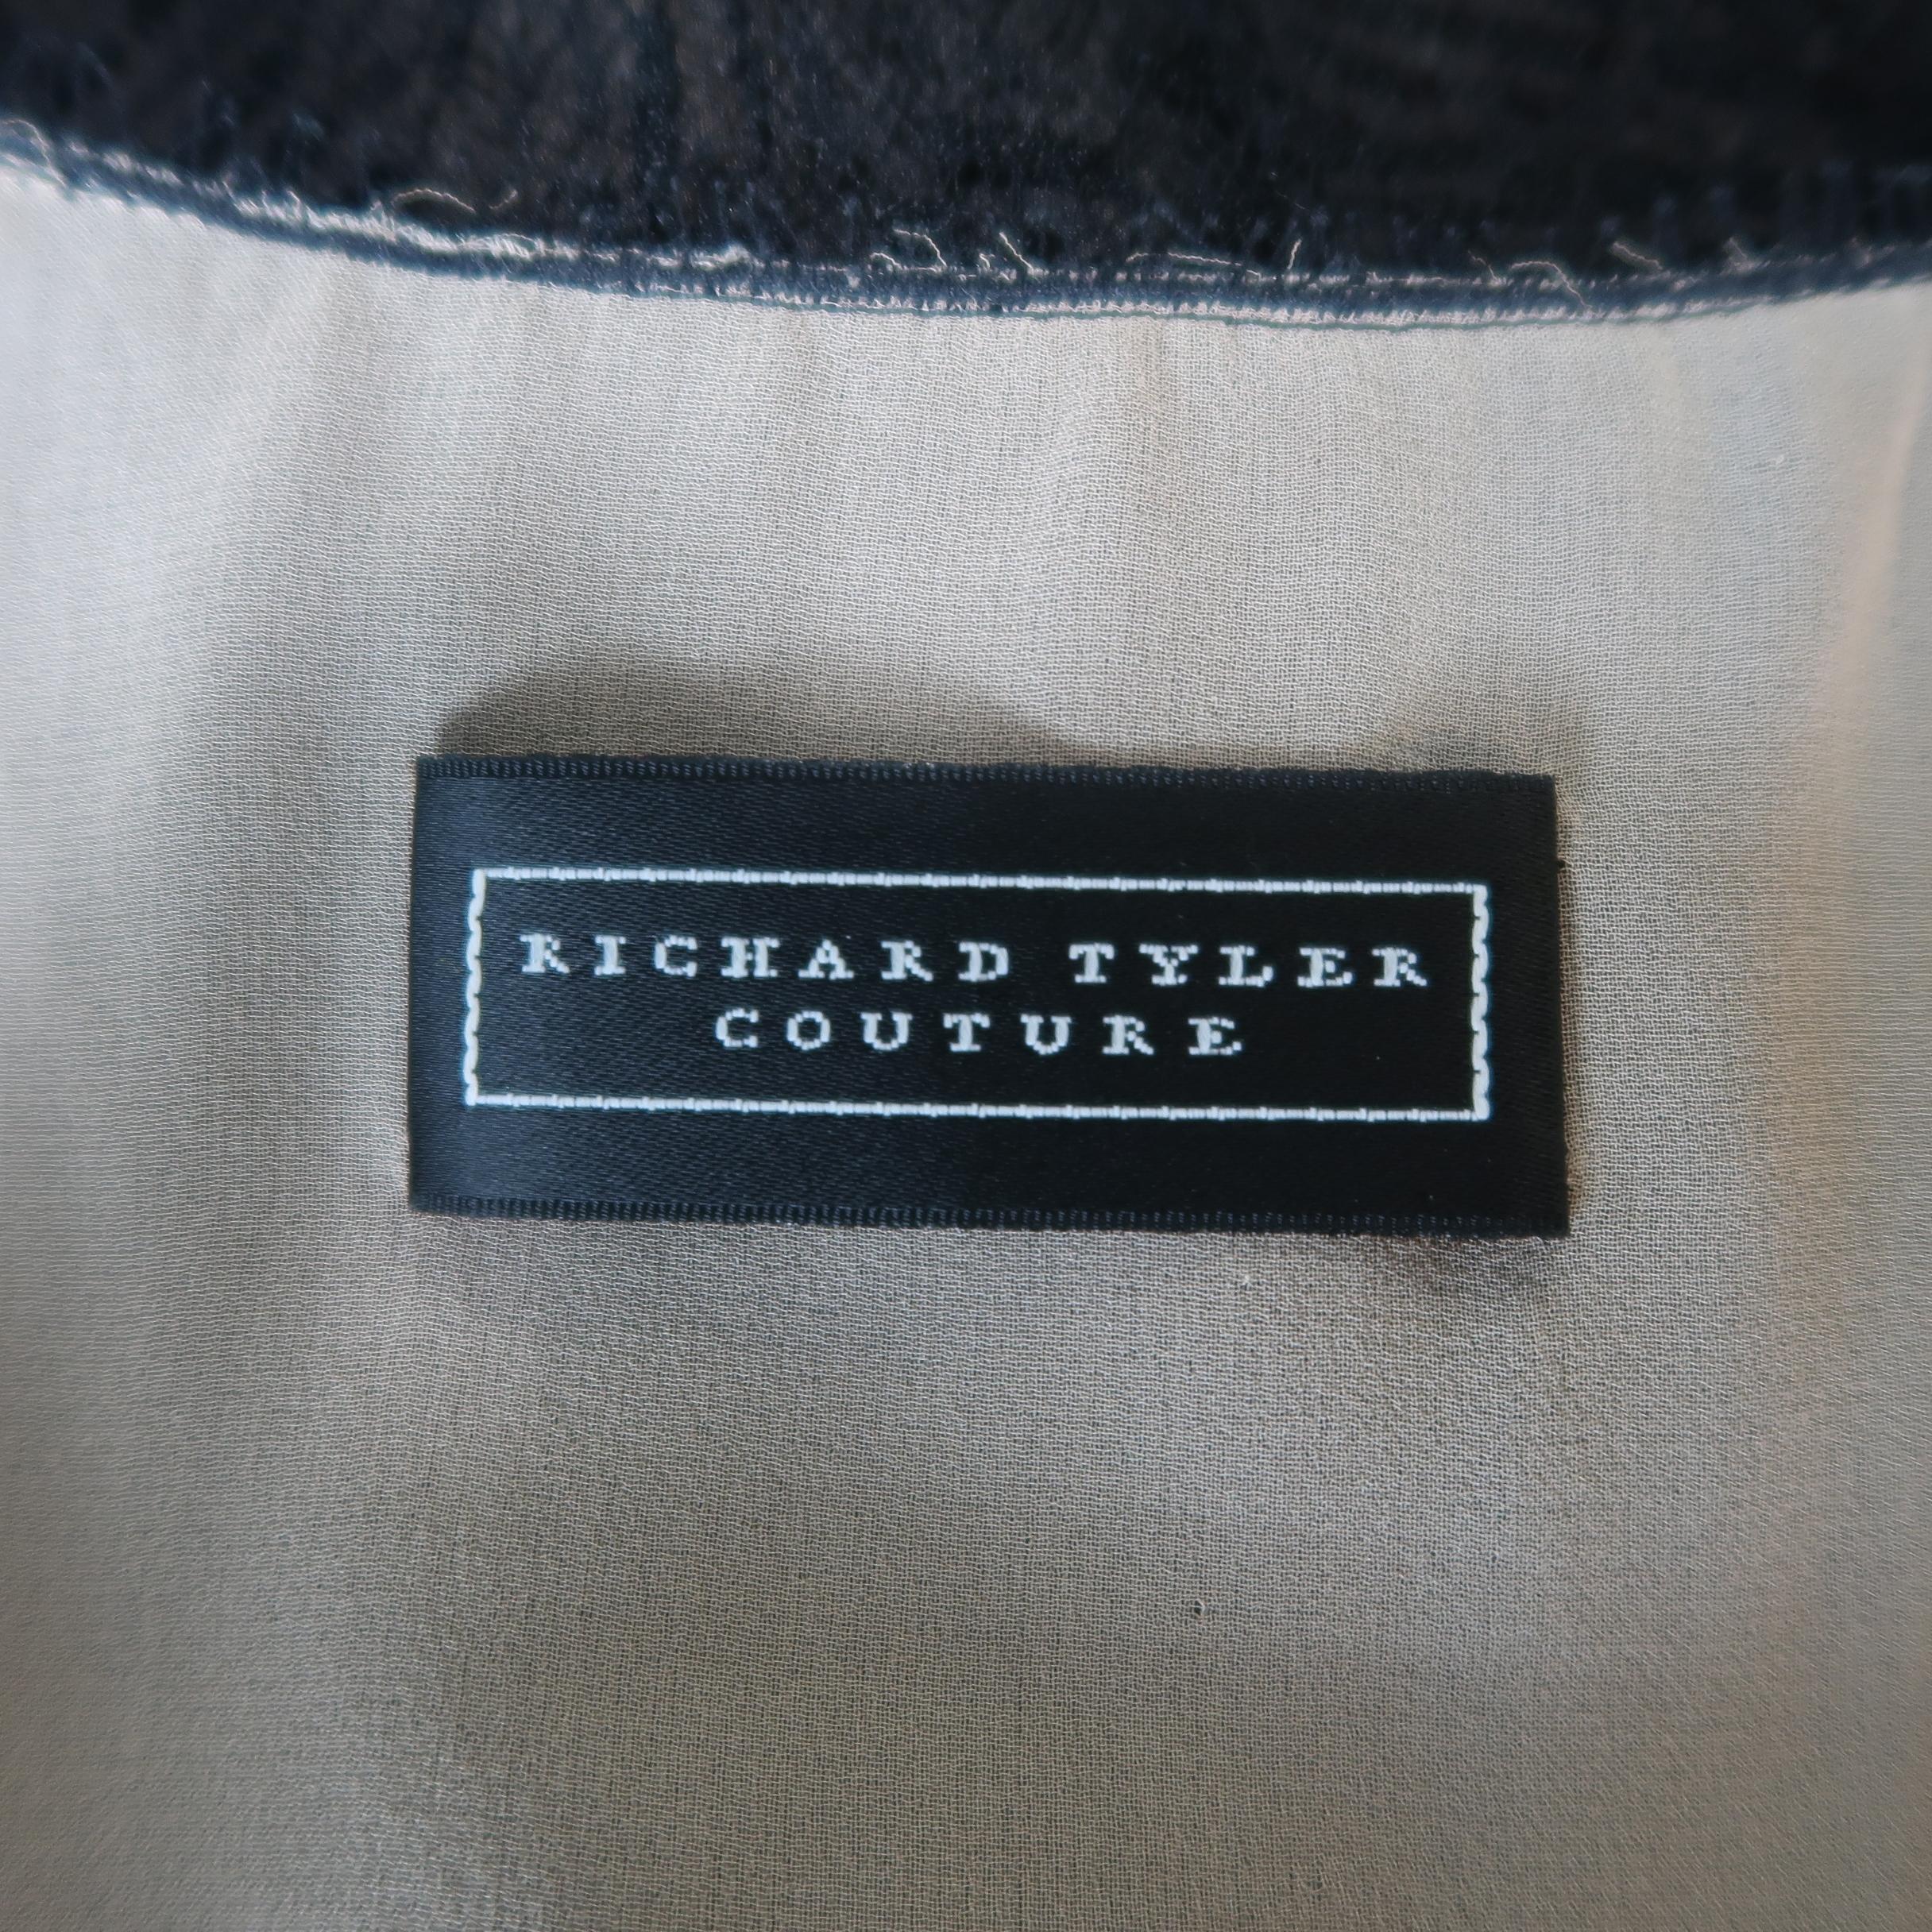 Richard Tyler Dress - Black Lace Ruffled Skirt Sleeveless Beaded Belt 8